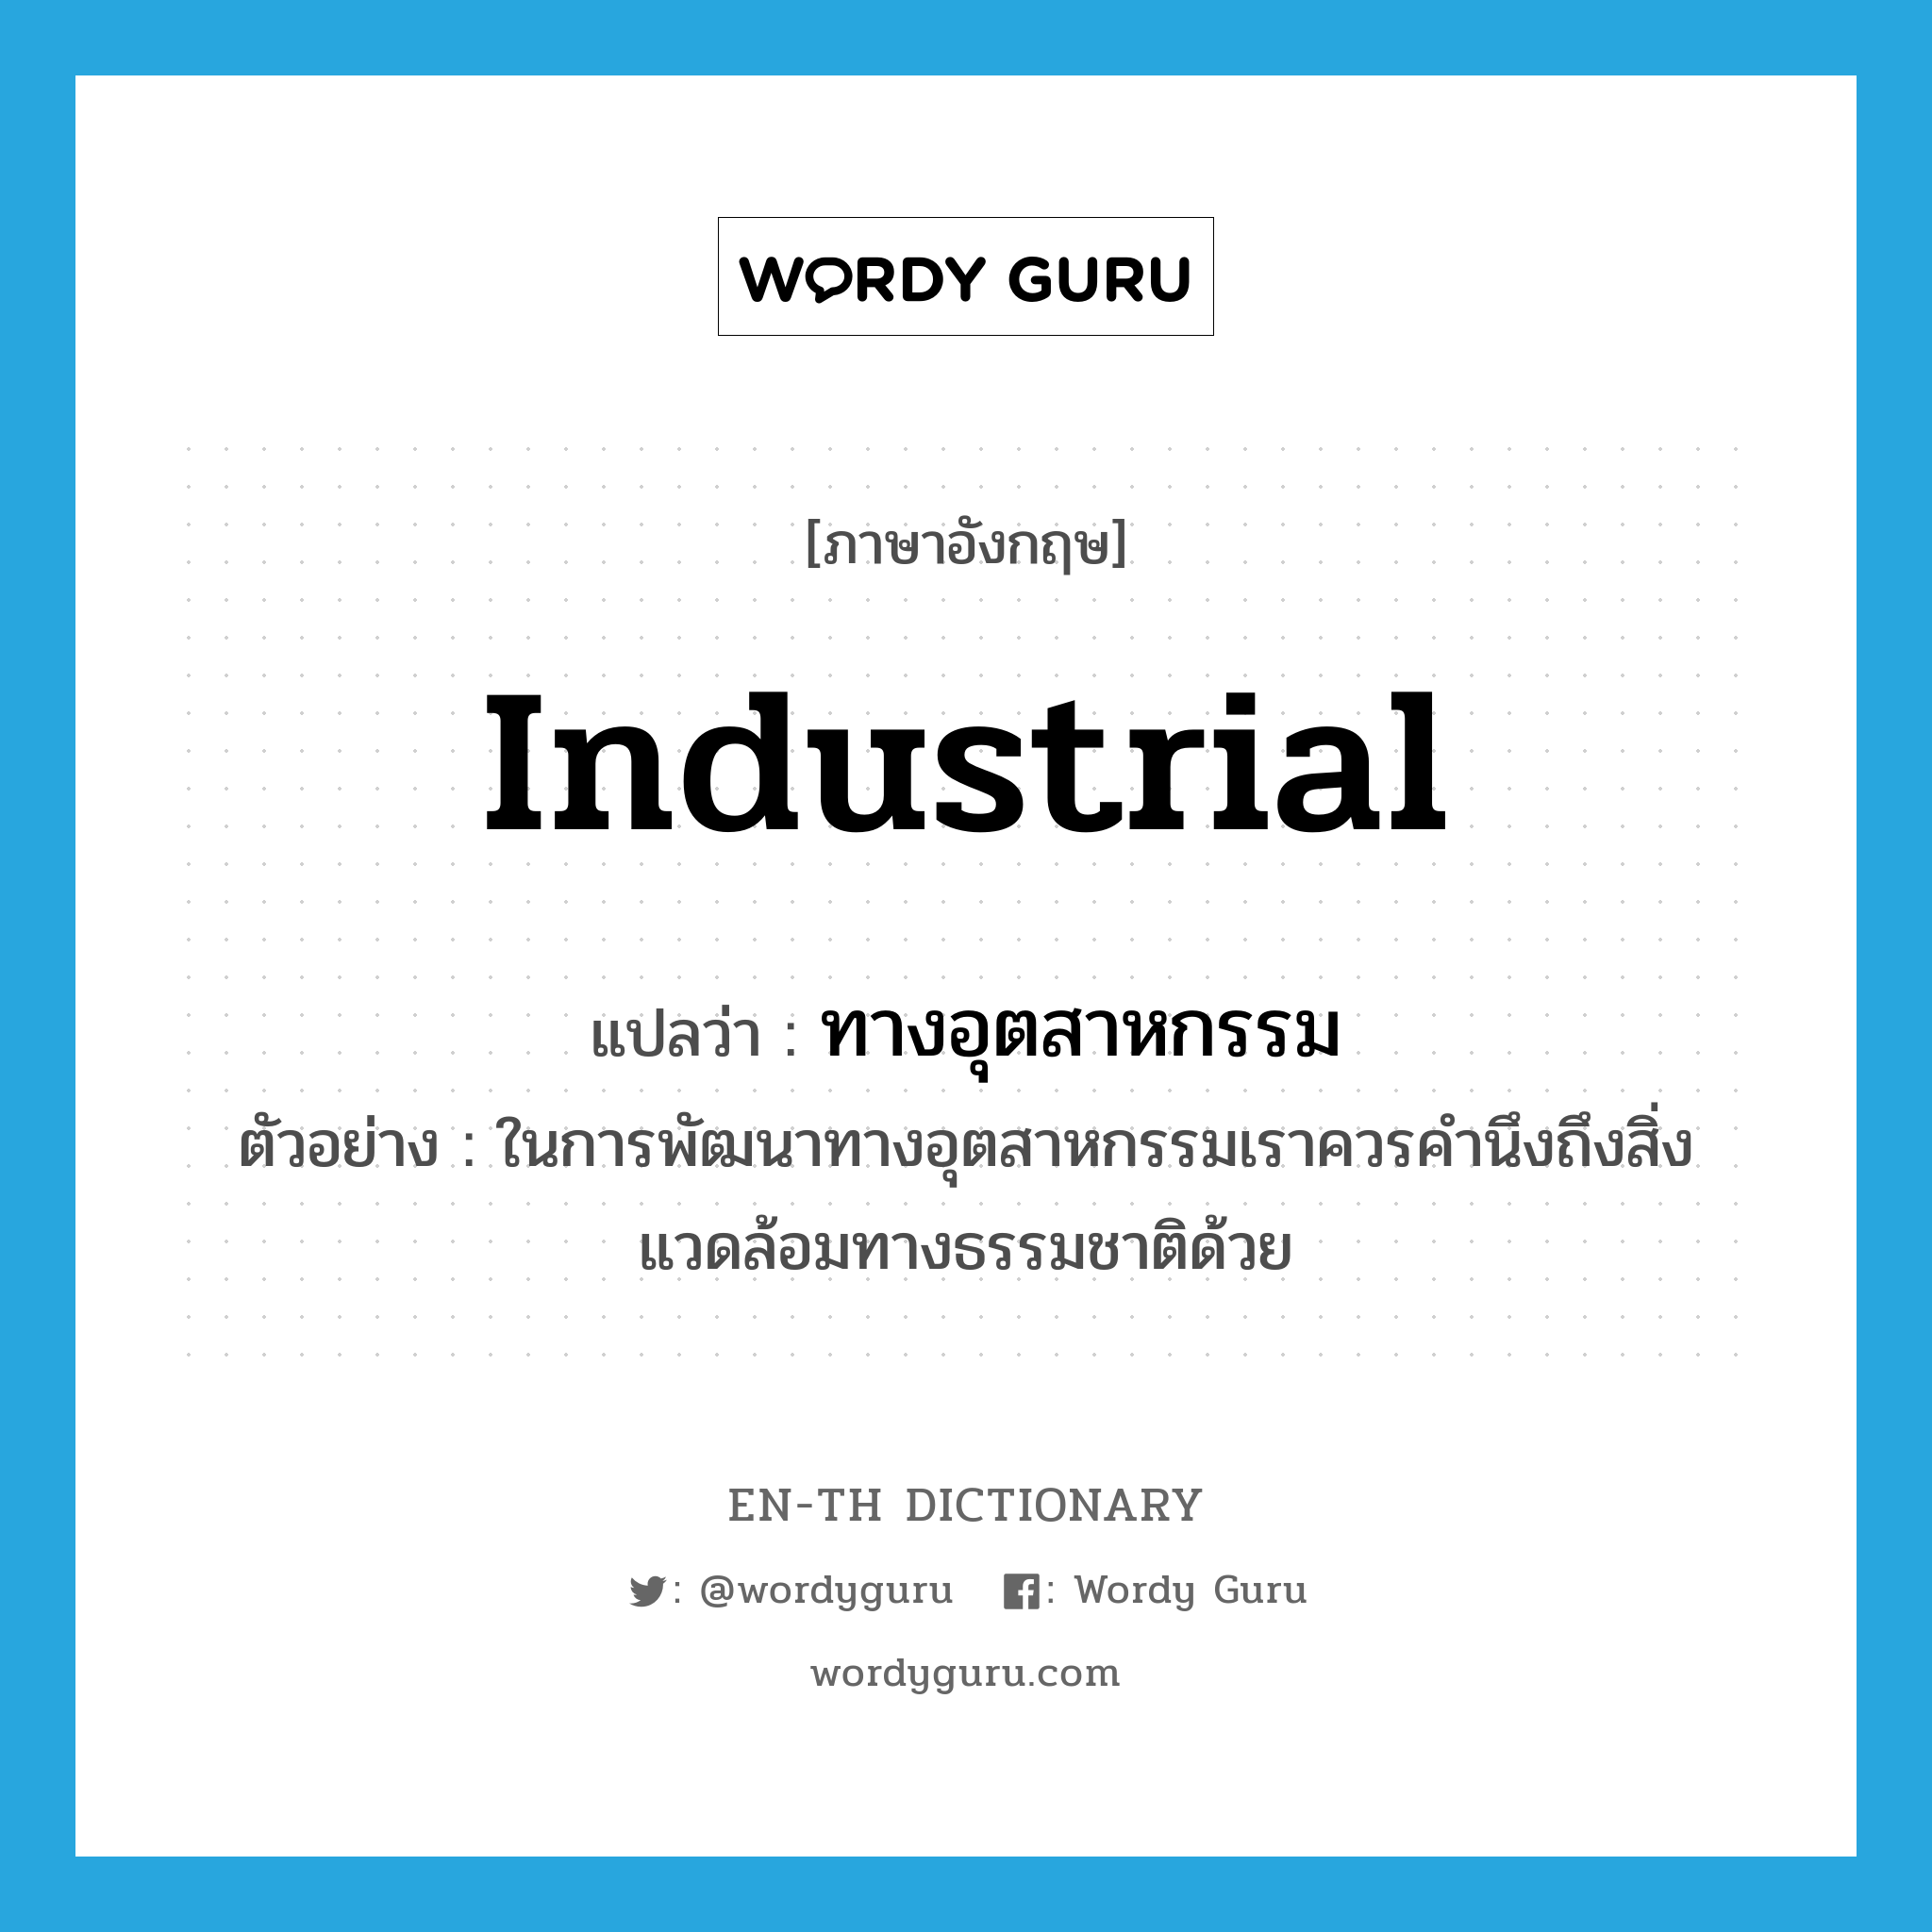 industrial แปลว่า?, คำศัพท์ภาษาอังกฤษ industrial แปลว่า ทางอุตสาหกรรม ประเภท ADJ ตัวอย่าง ในการพัฒนาทางอุตสาหกรรมเราควรคำนึงถึงสิ่งแวดล้อมทางธรรมชาติด้วย หมวด ADJ